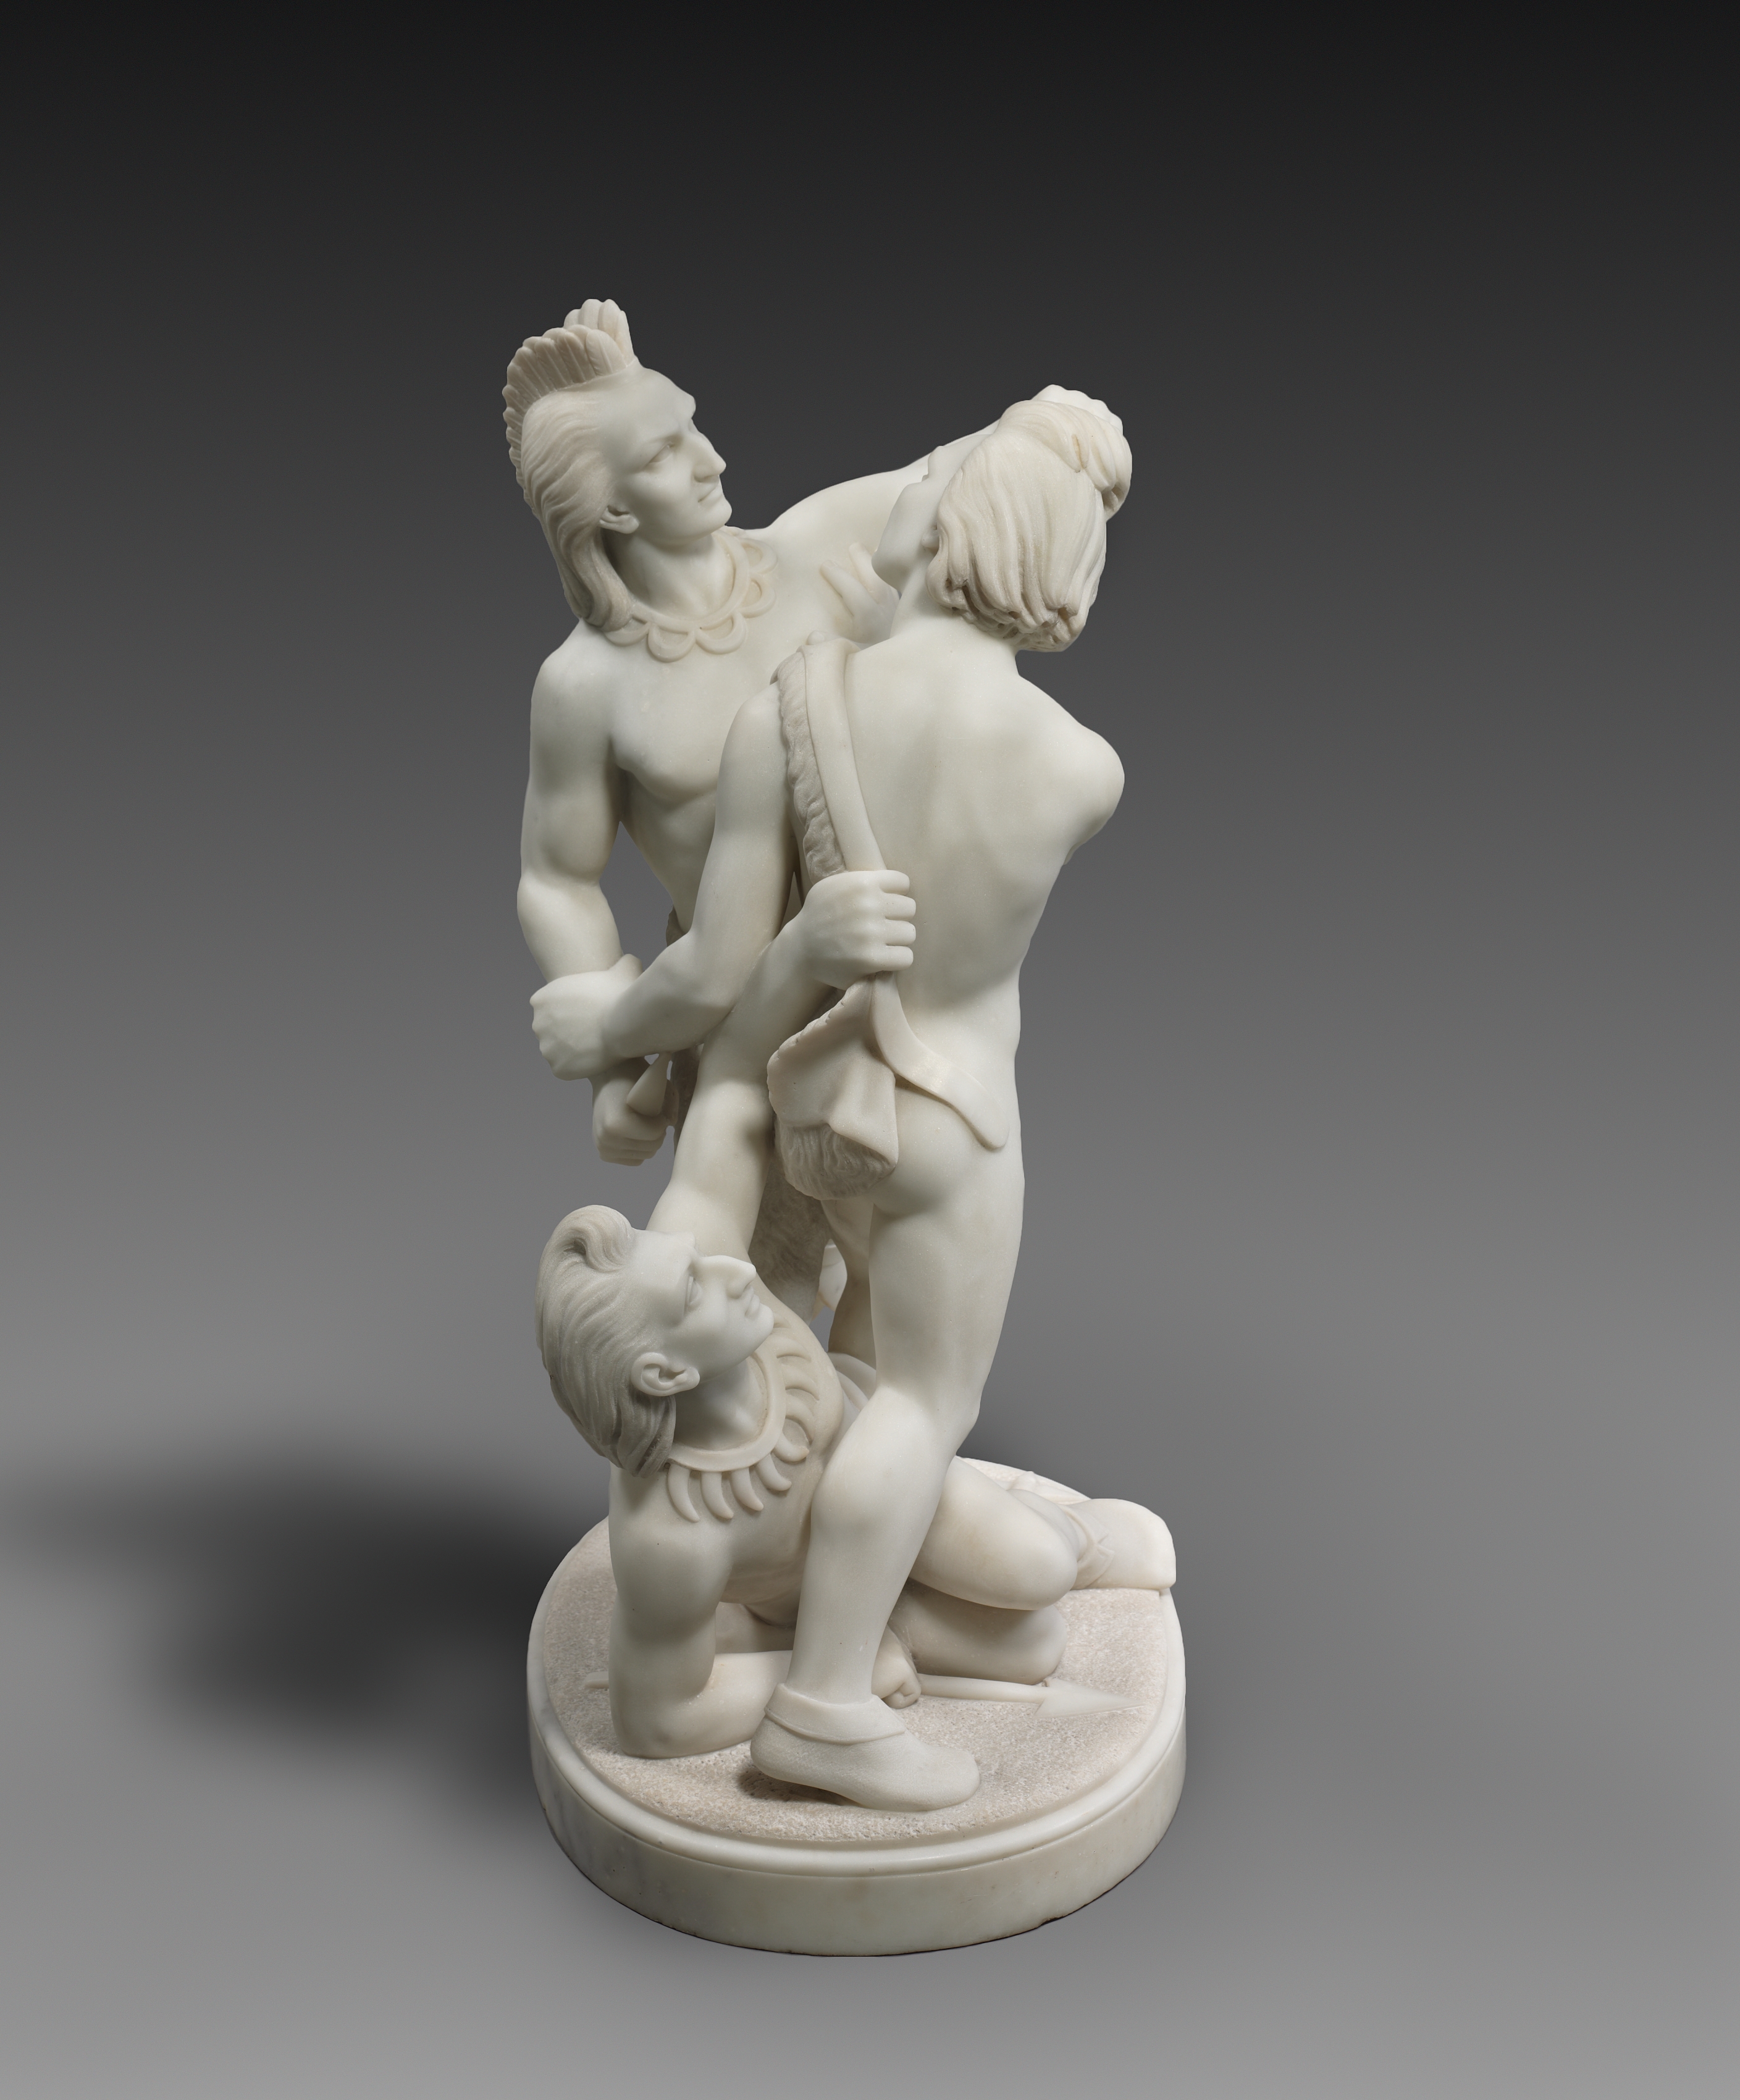 Індійський бій by Edmonia Lewis - 1868 - 76.2 x 48.3 x 36.5 см 